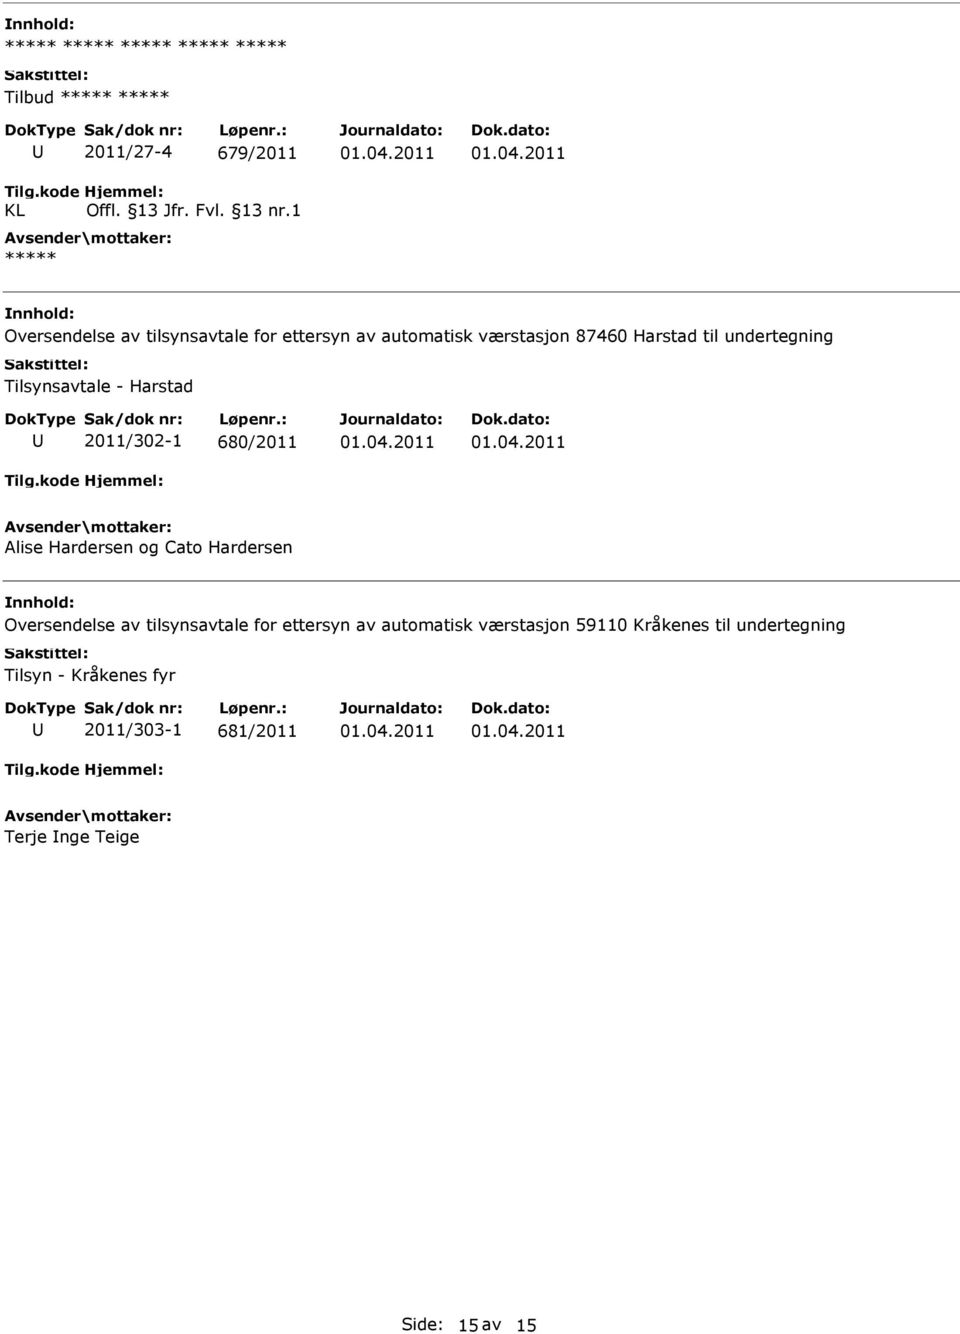 Tilsynsavtale - Harstad 2011/302-1 680/2011 Alise Hardersen og Cato Hardersen Oversendelse av